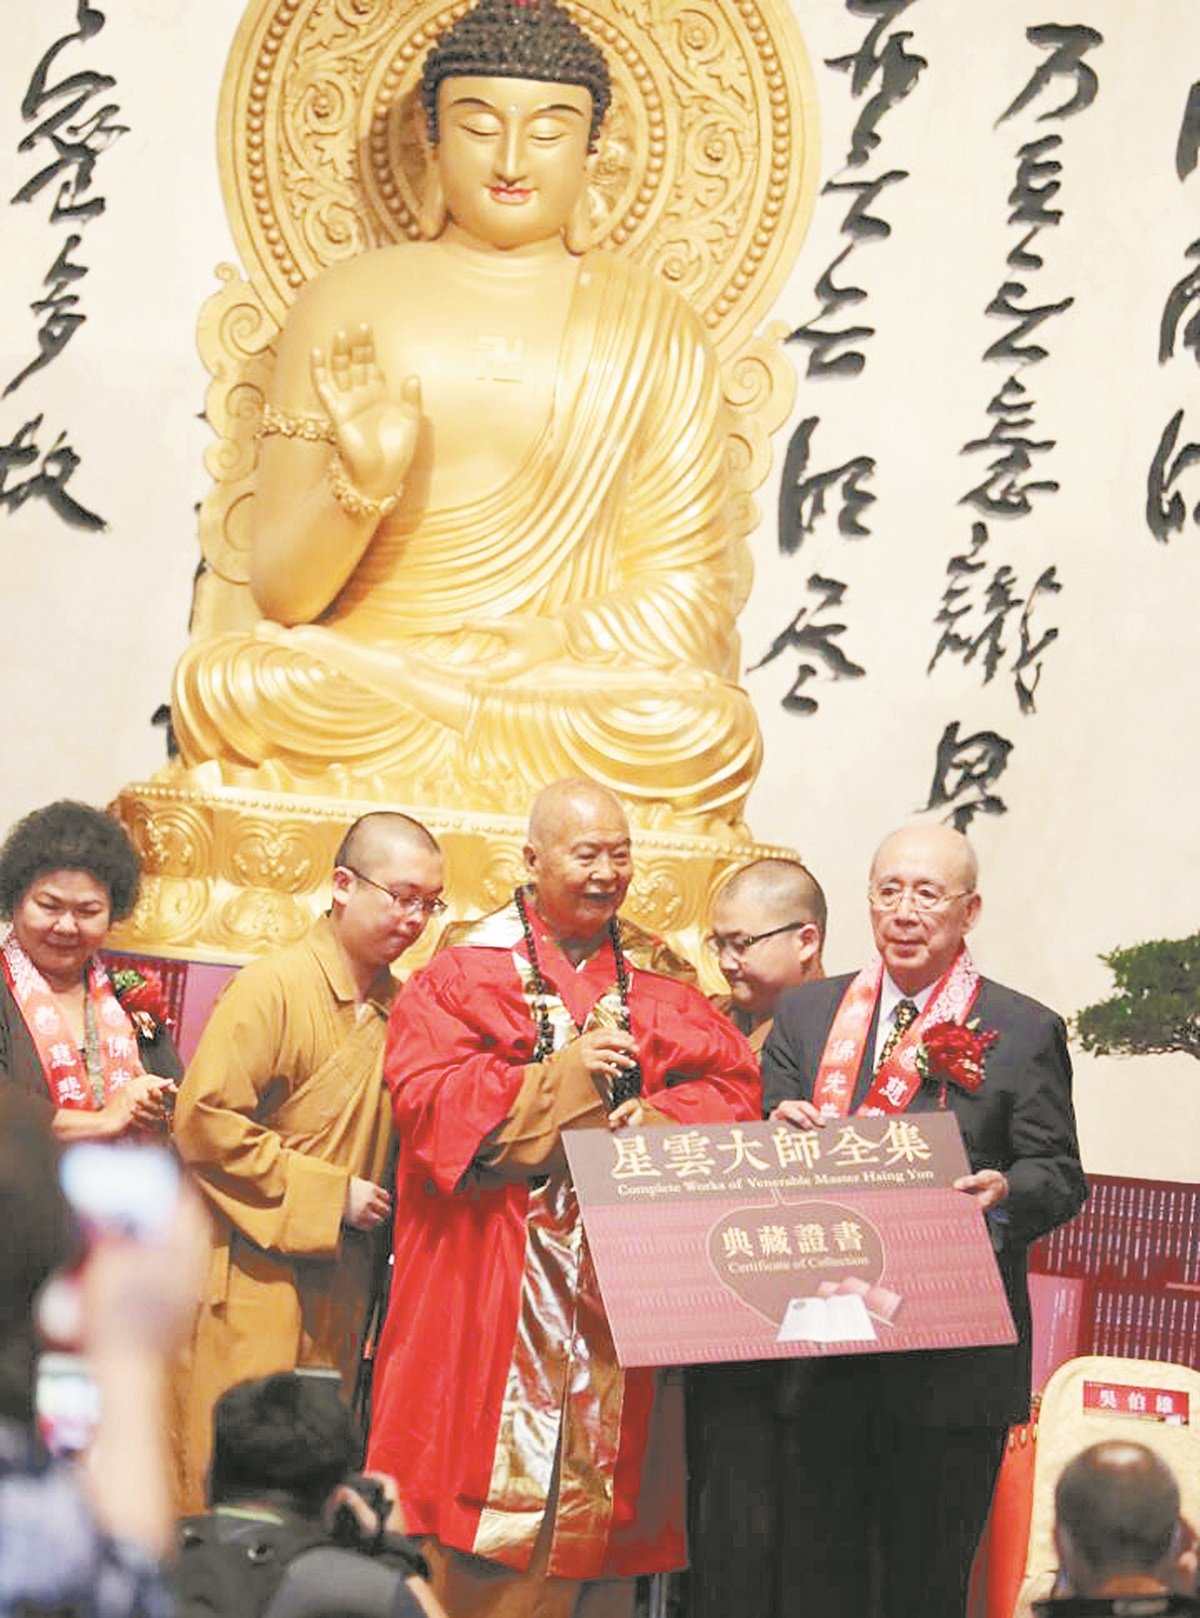 星云大师（前左）颁赠《全集》典藏证书，给国际佛光会荣誉总会长吴伯雄（右）。